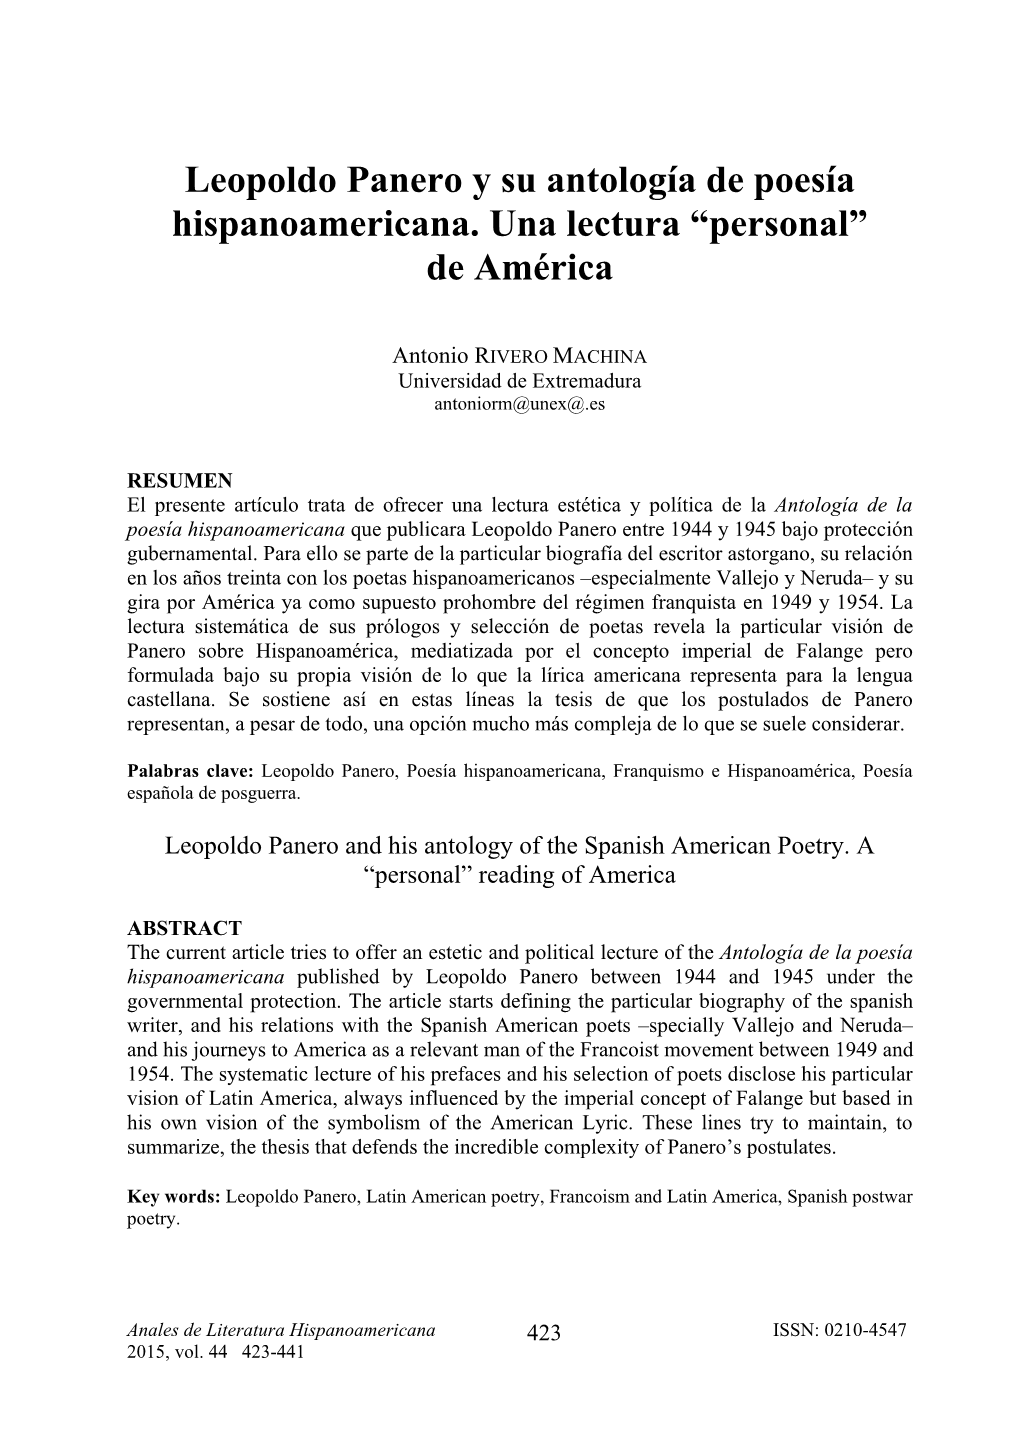 Leopoldo Panero Y Su Antología De Poesía Hispanoamericana. Una Lectura “Personal” De América